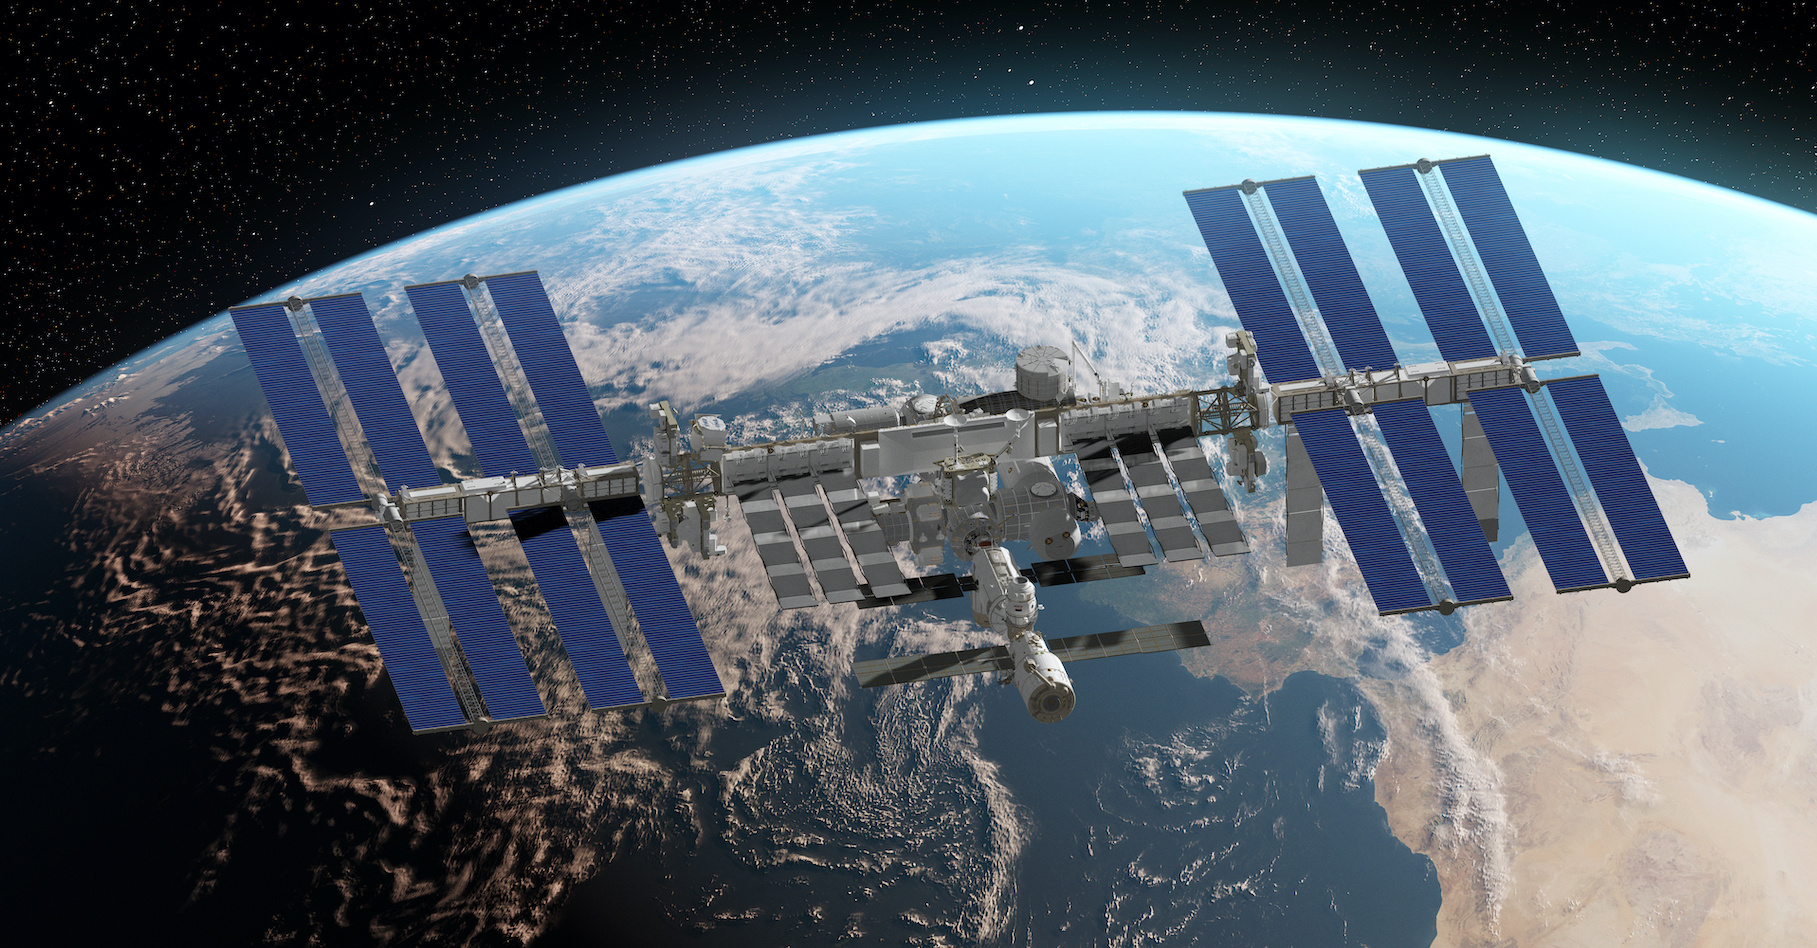 La Station spatiale internationale est prévue pour fonctionner au moins jusqu’en 2024. © SciePro, Adobe Stock